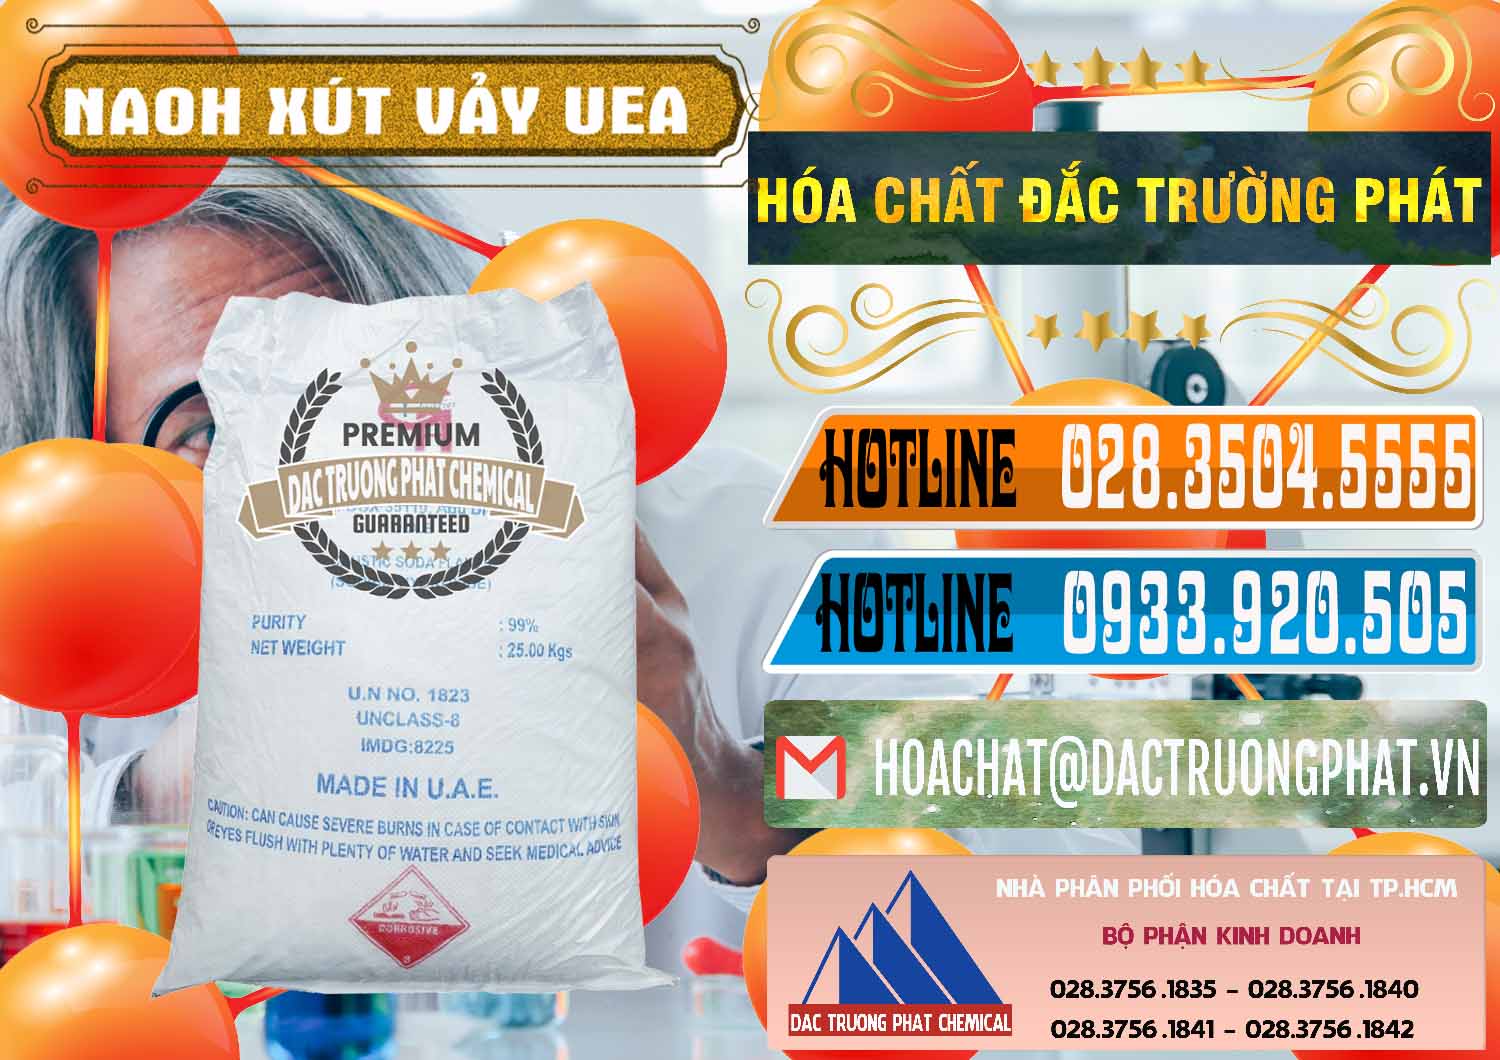 Nhà cung cấp ( bán ) Xút Vảy - NaOH Vảy UAE Iran - 0432 - Đơn vị chuyên cung cấp - nhập khẩu hóa chất tại TP.HCM - stmp.net